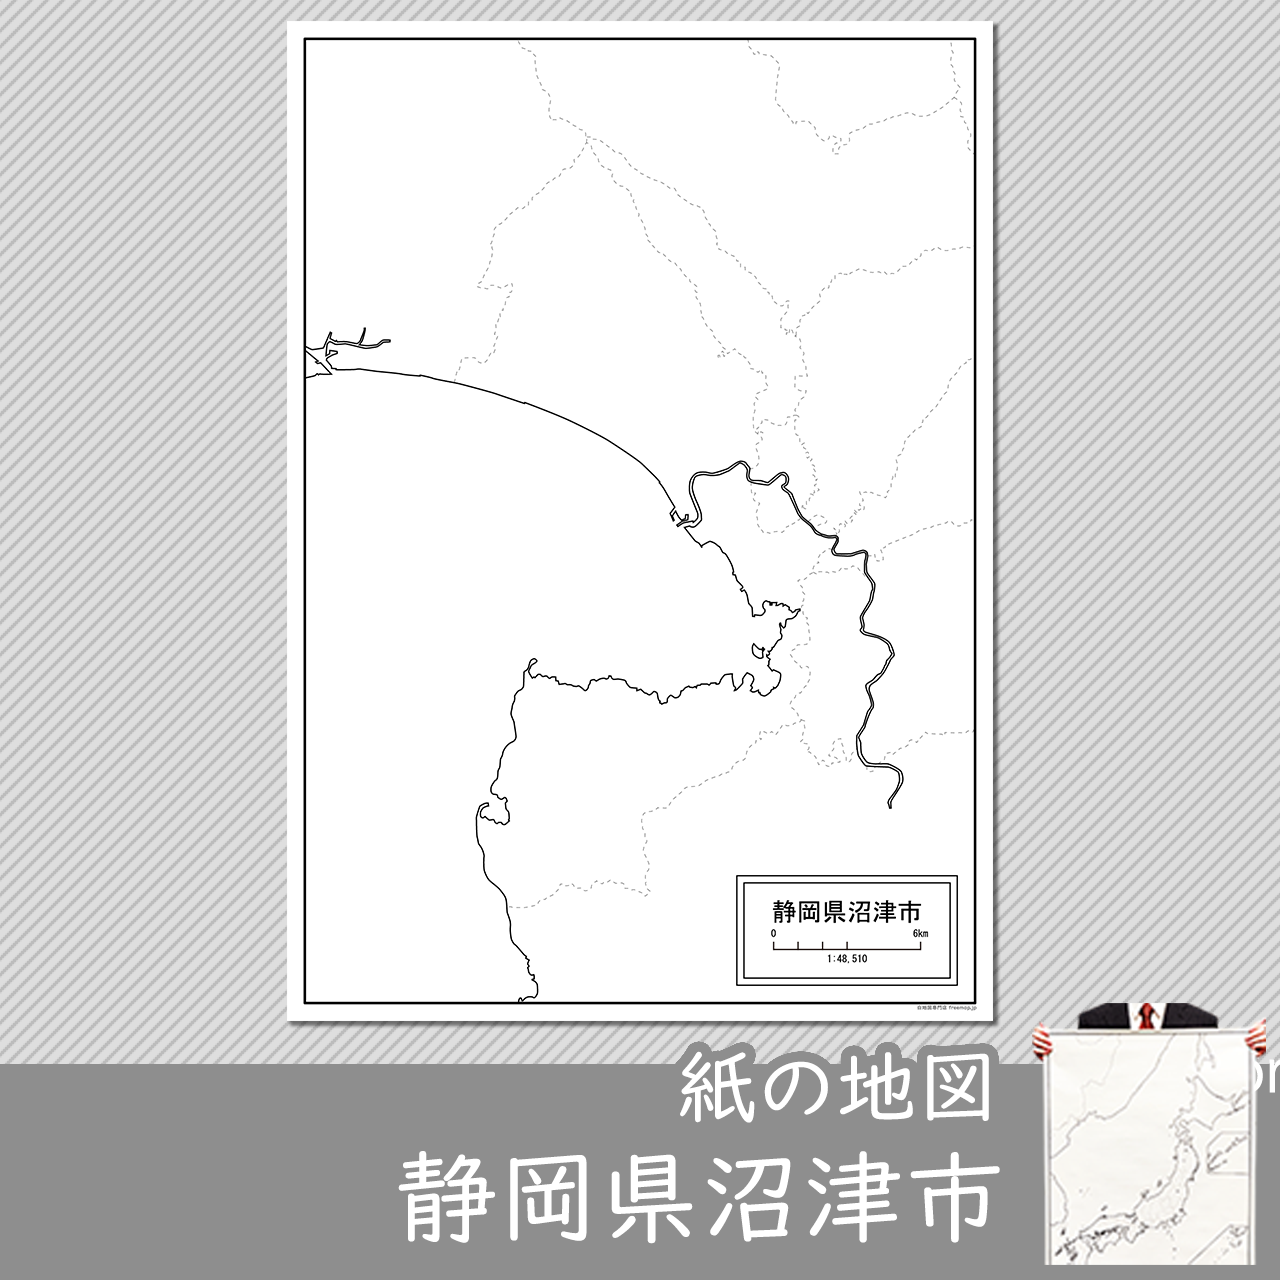 沼津市の紙の白地図のサムネイル